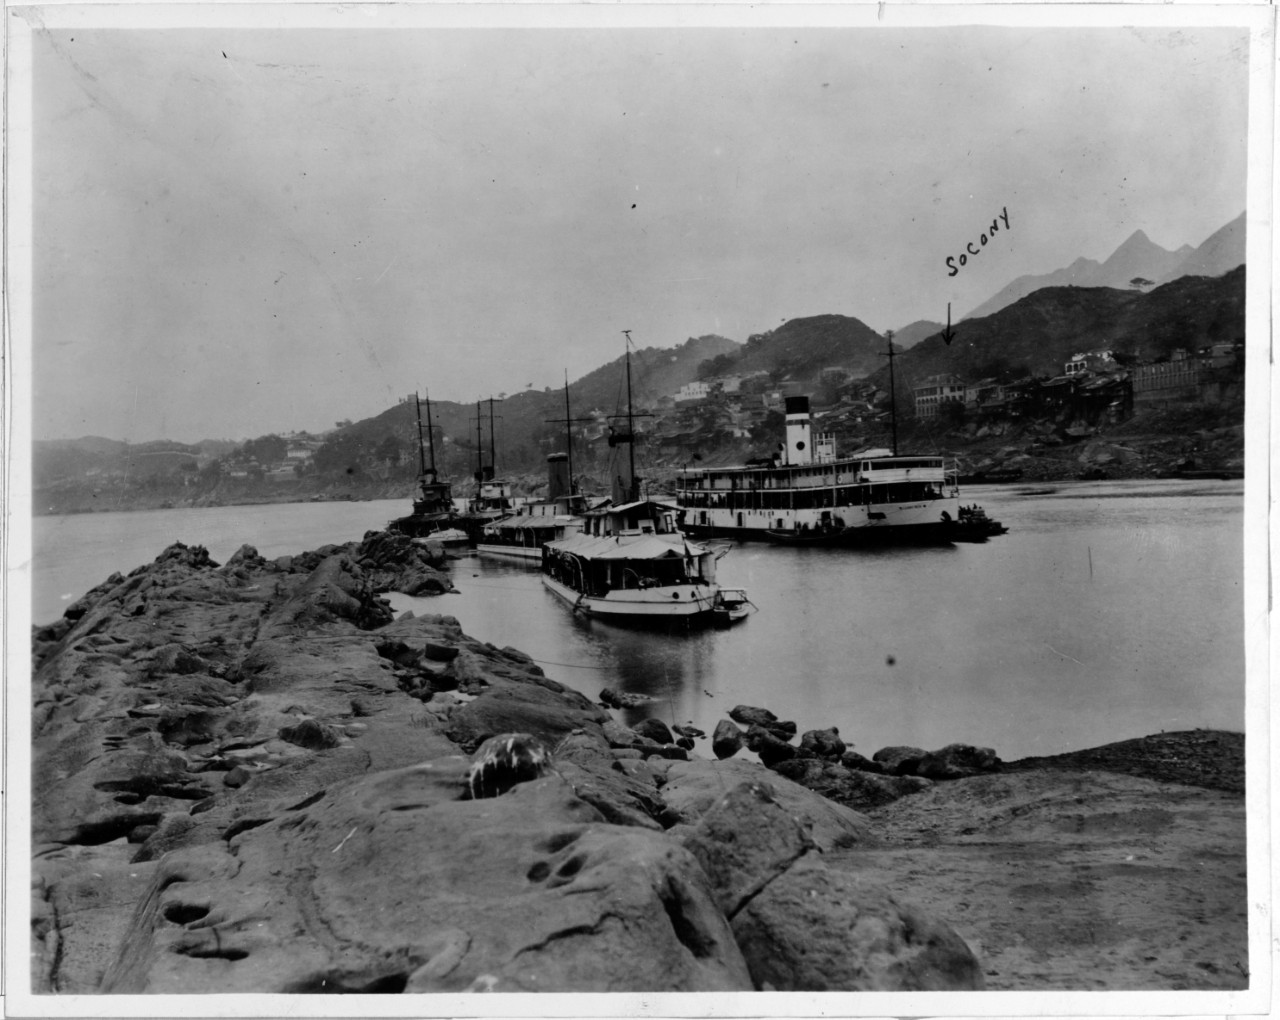 Gunboats at Lung-Men-Hao, China, April 1922.